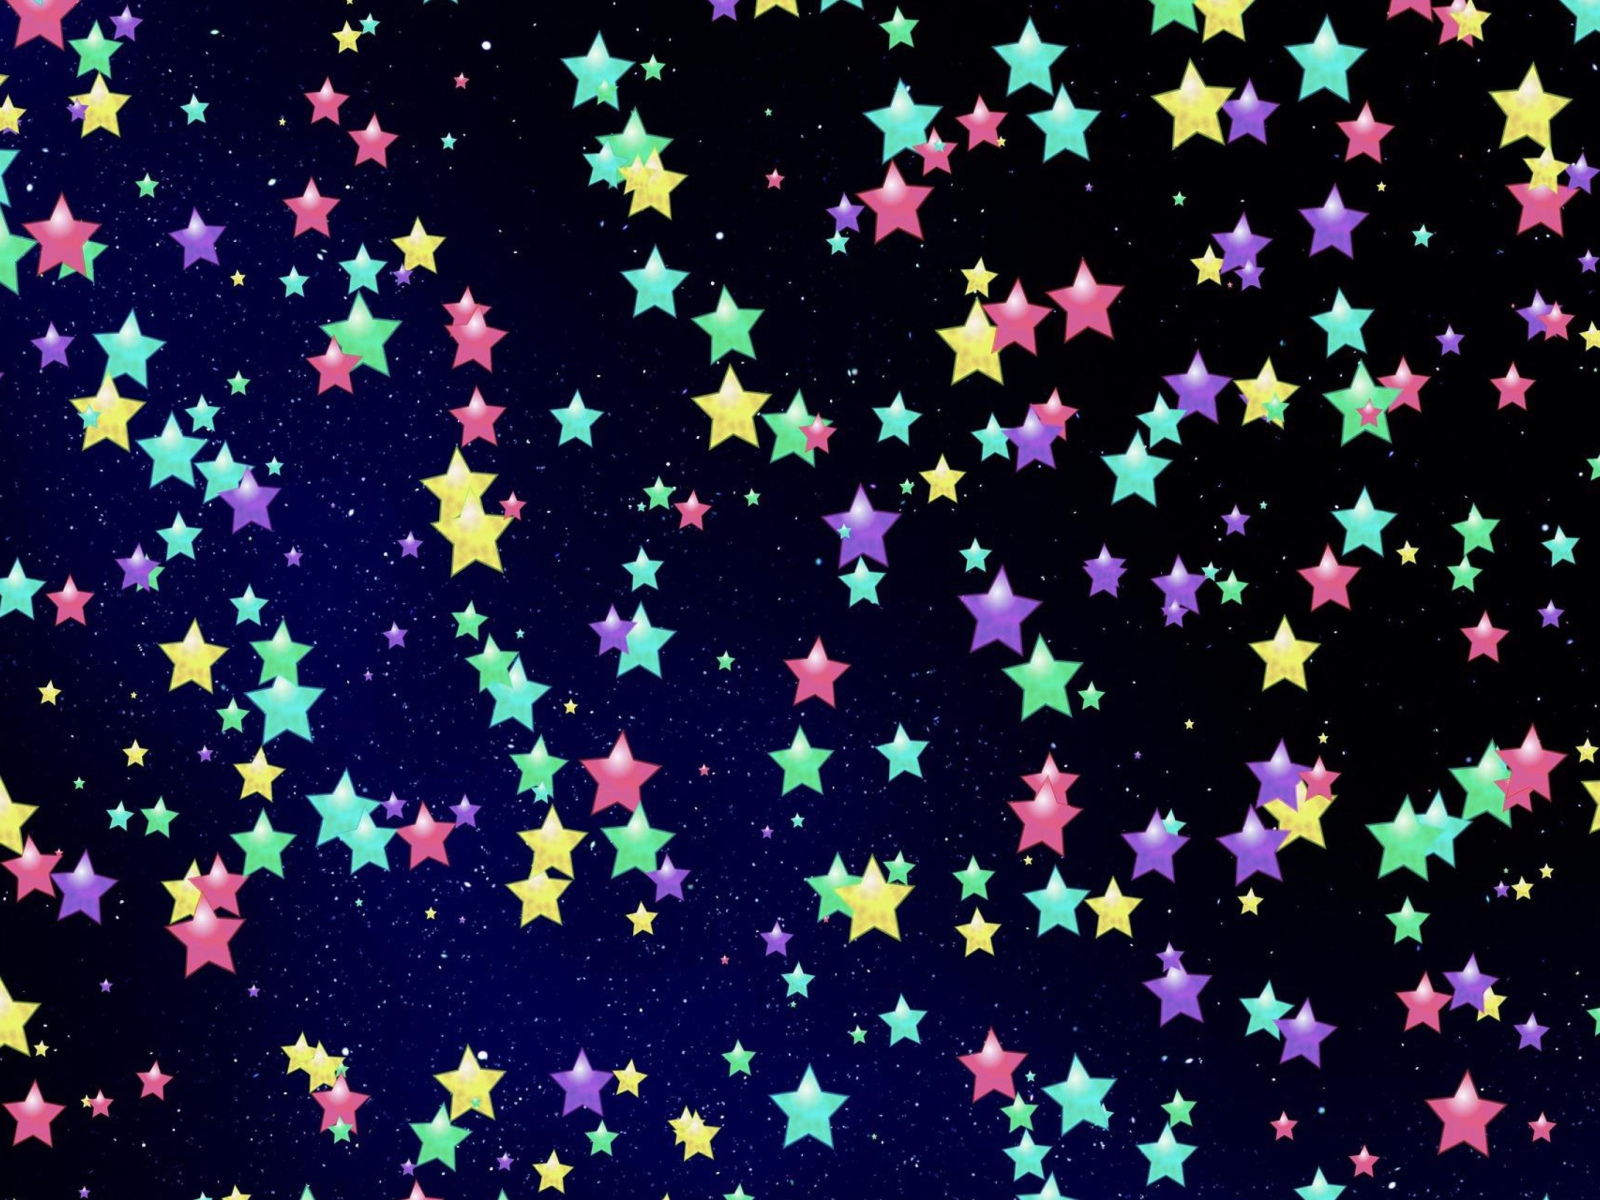 Das Colorful Stars Wallpaper 1600x1200